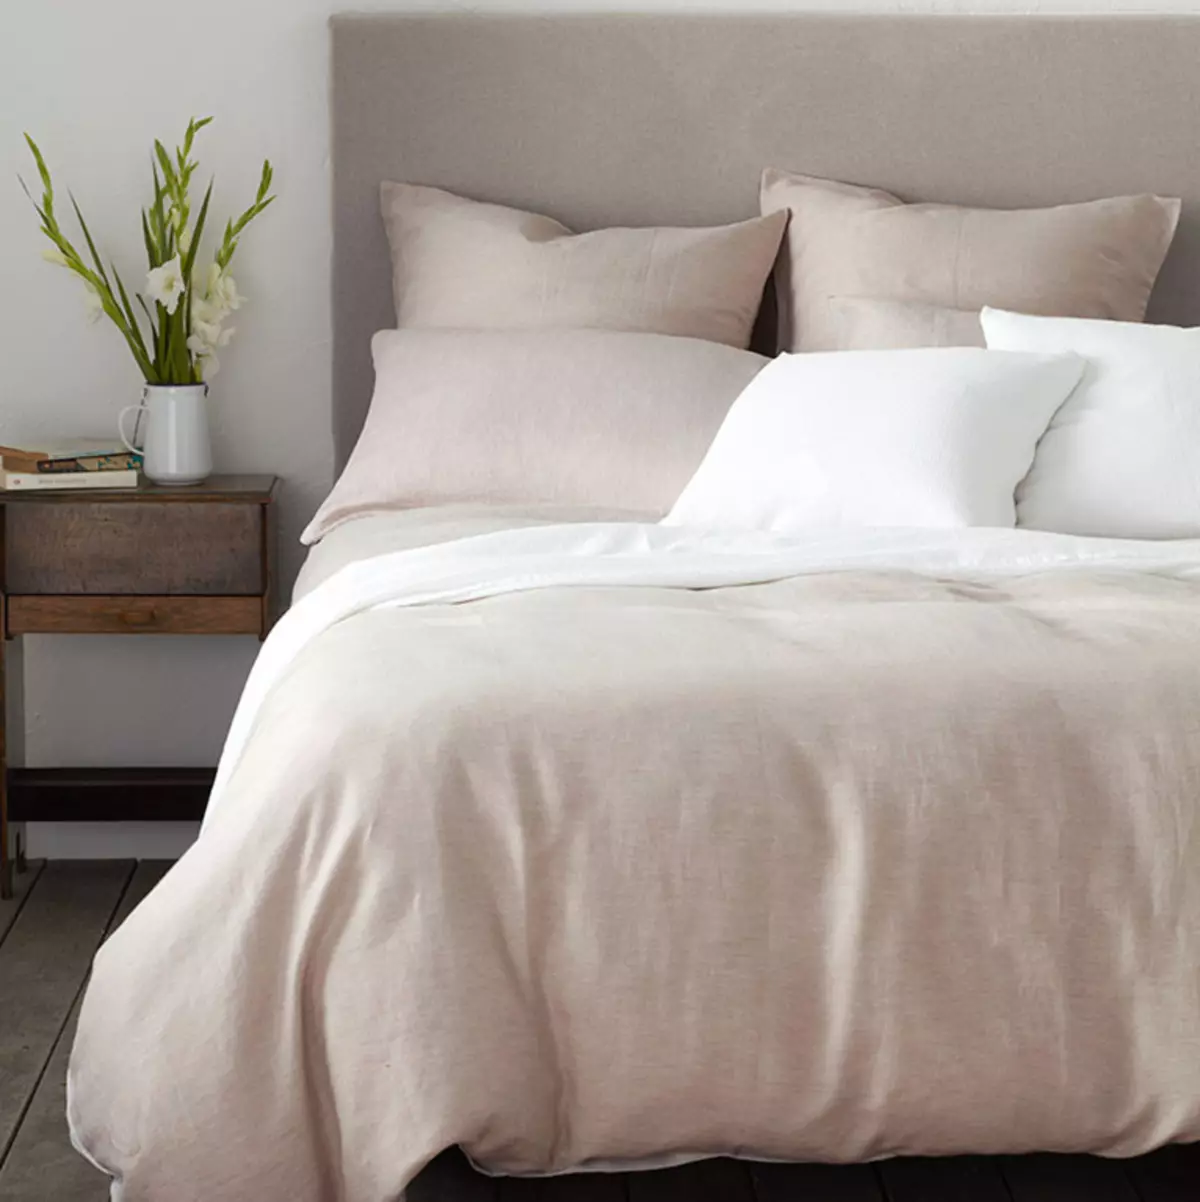 Sengetøy stoff: Hvilket materiale er bedre å kjøpe? Typer og vurdering. Hvordan velge høy kvalitet seng? Hva syr de fra? 24761_55